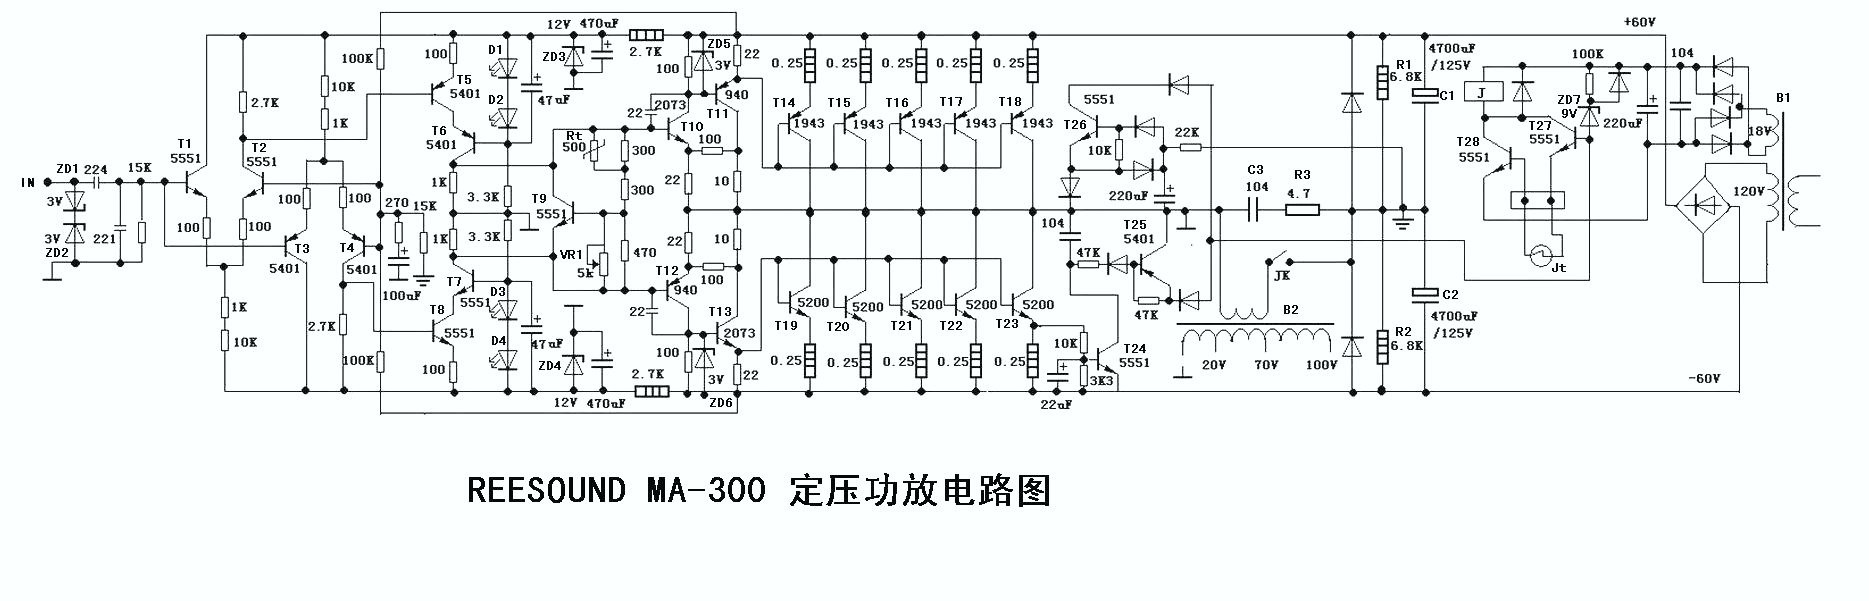 Ostrý zvuk konstantního tlaku REESOUND MA-300 schéma výkonového zesilovače